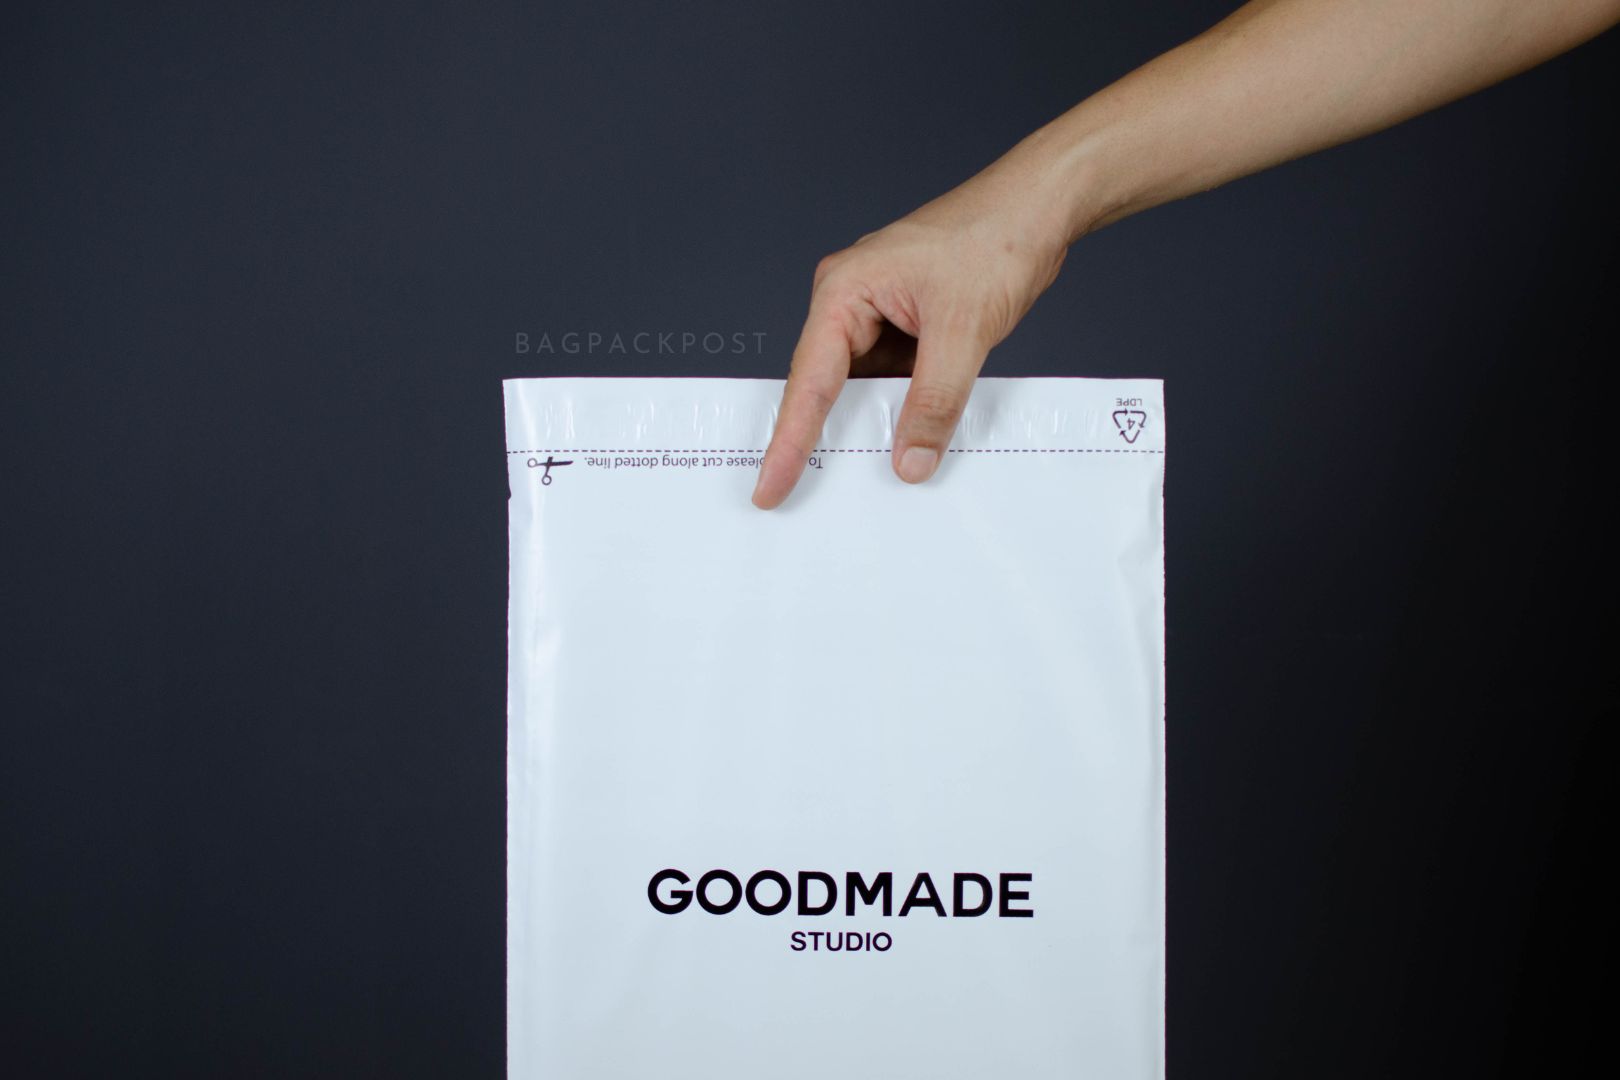 ซองไปรษณีย์พิมพ์ลาย GoodMade Studio ซองไปรษณีย์สีขาว ซองกันน้ำ 2 BagPackPost